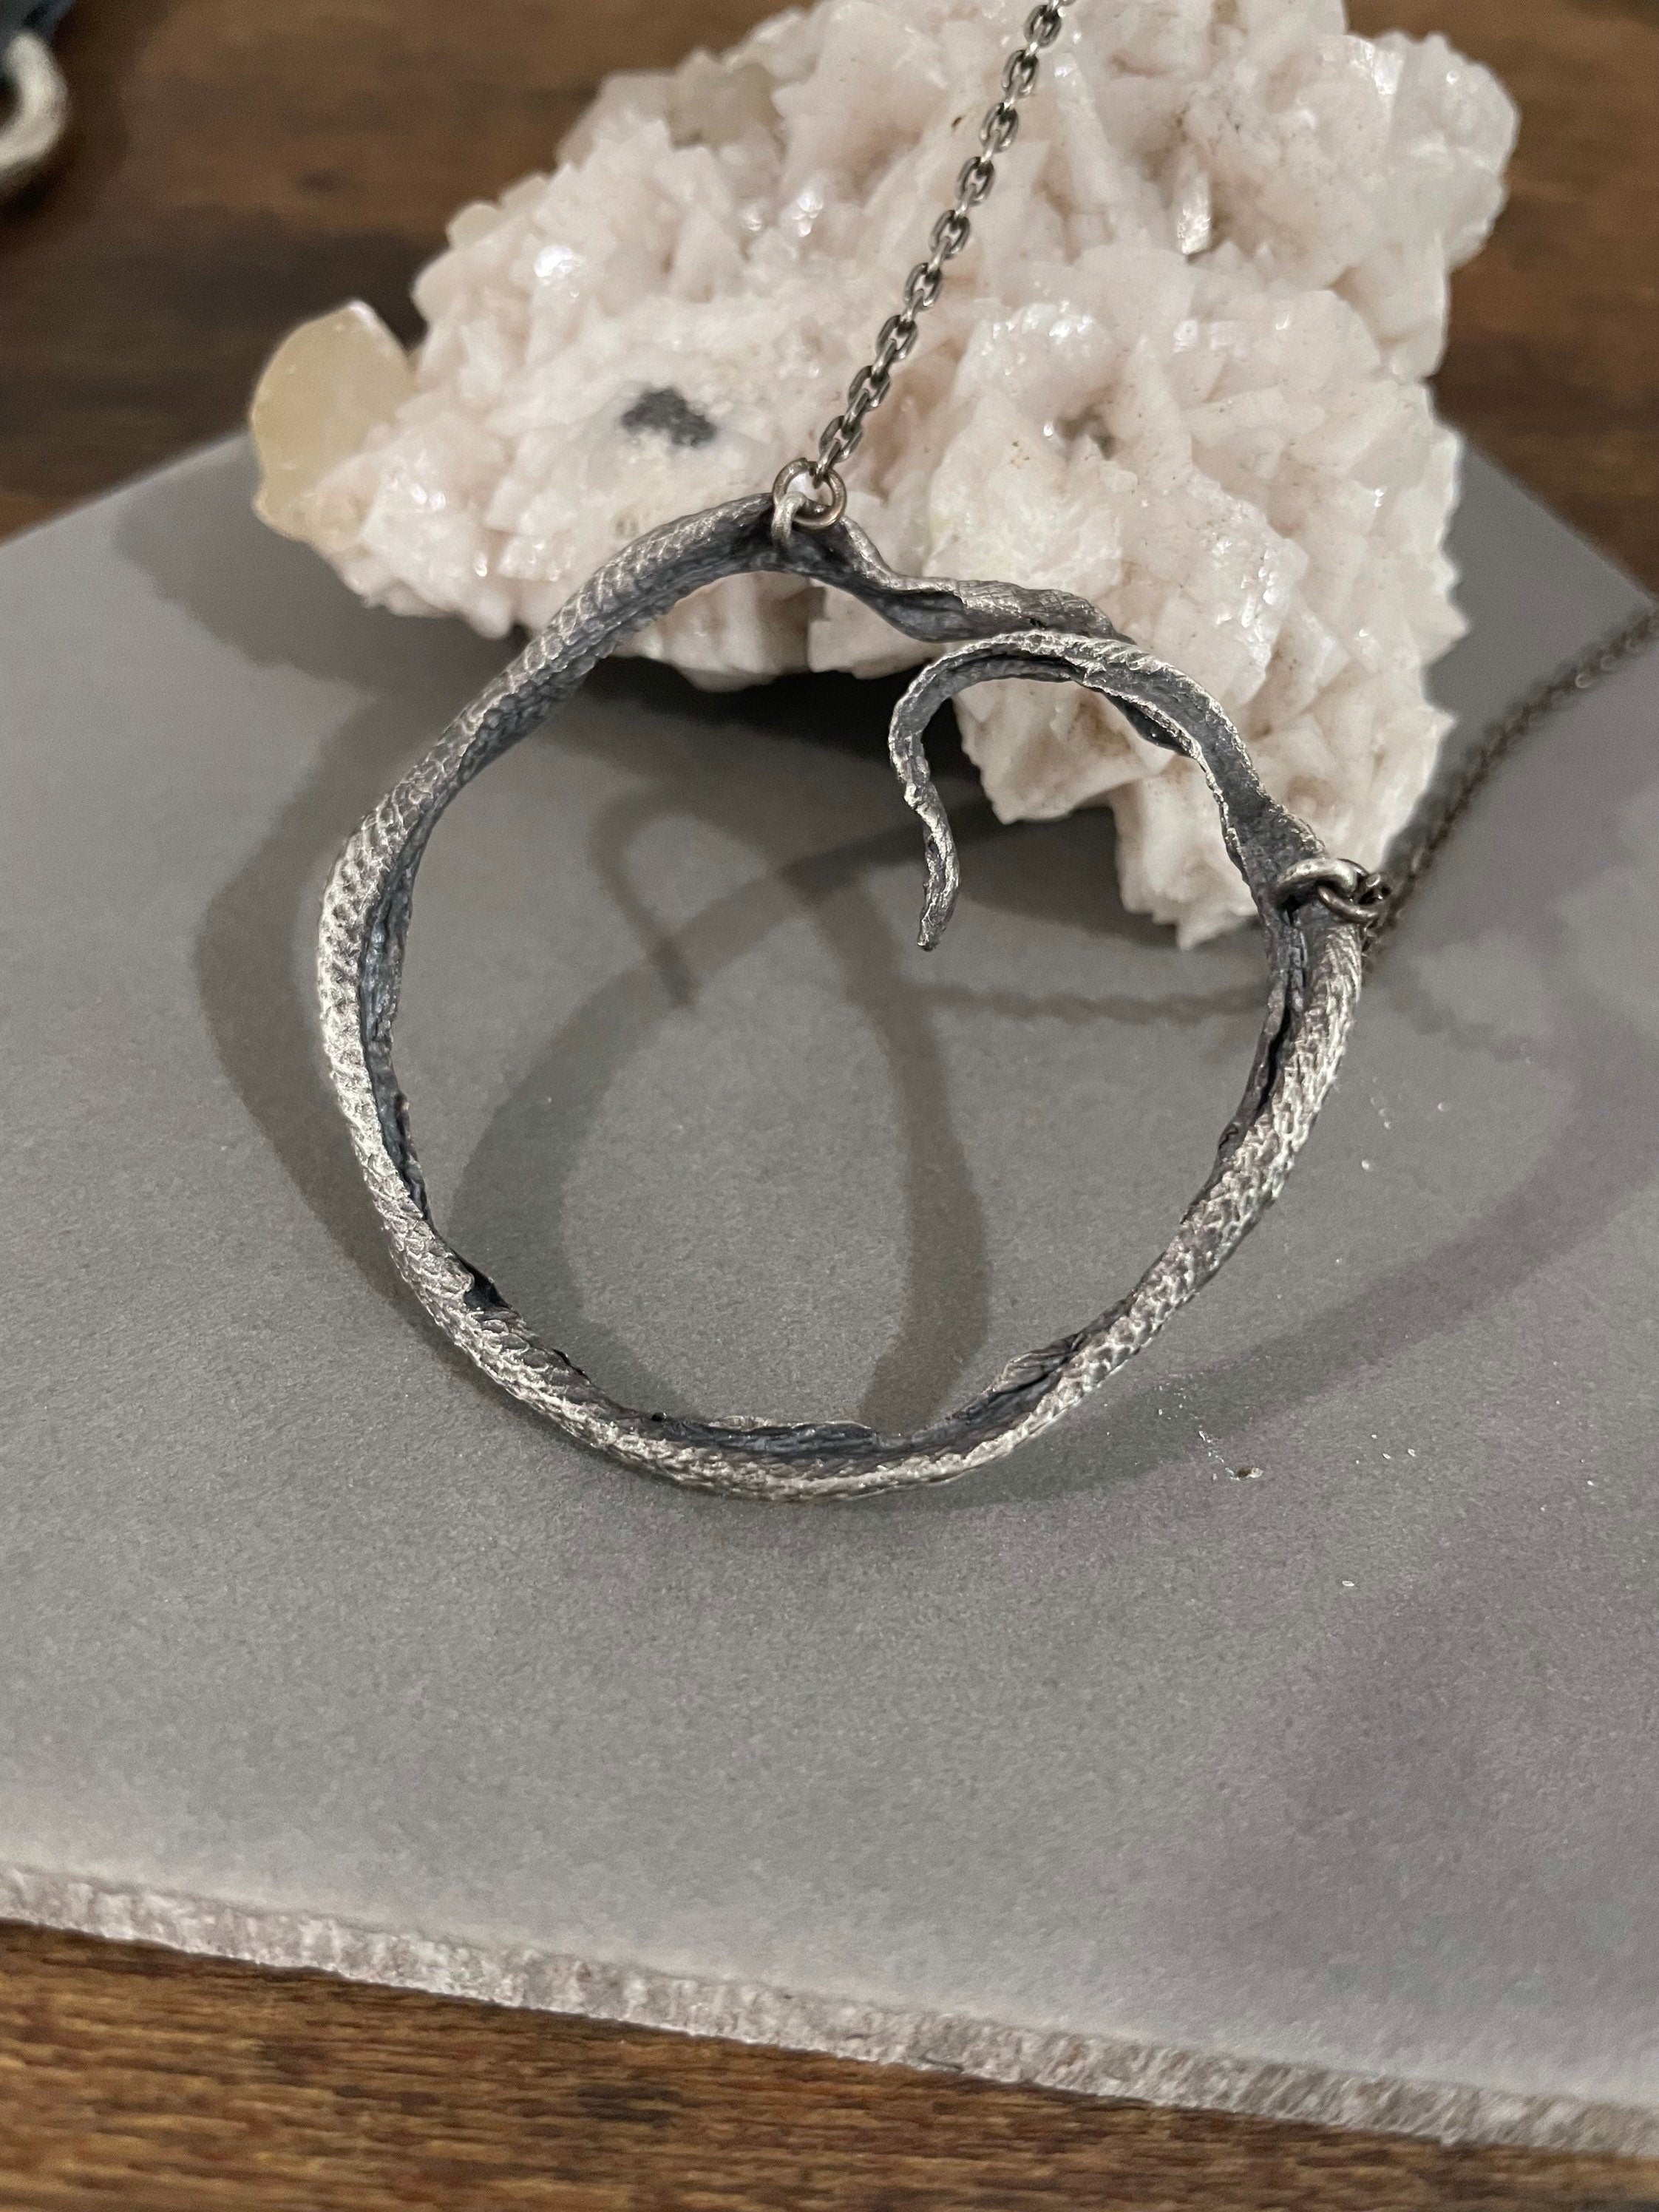 Huge Ouroboros Pendant Necklace - Ready to Ship